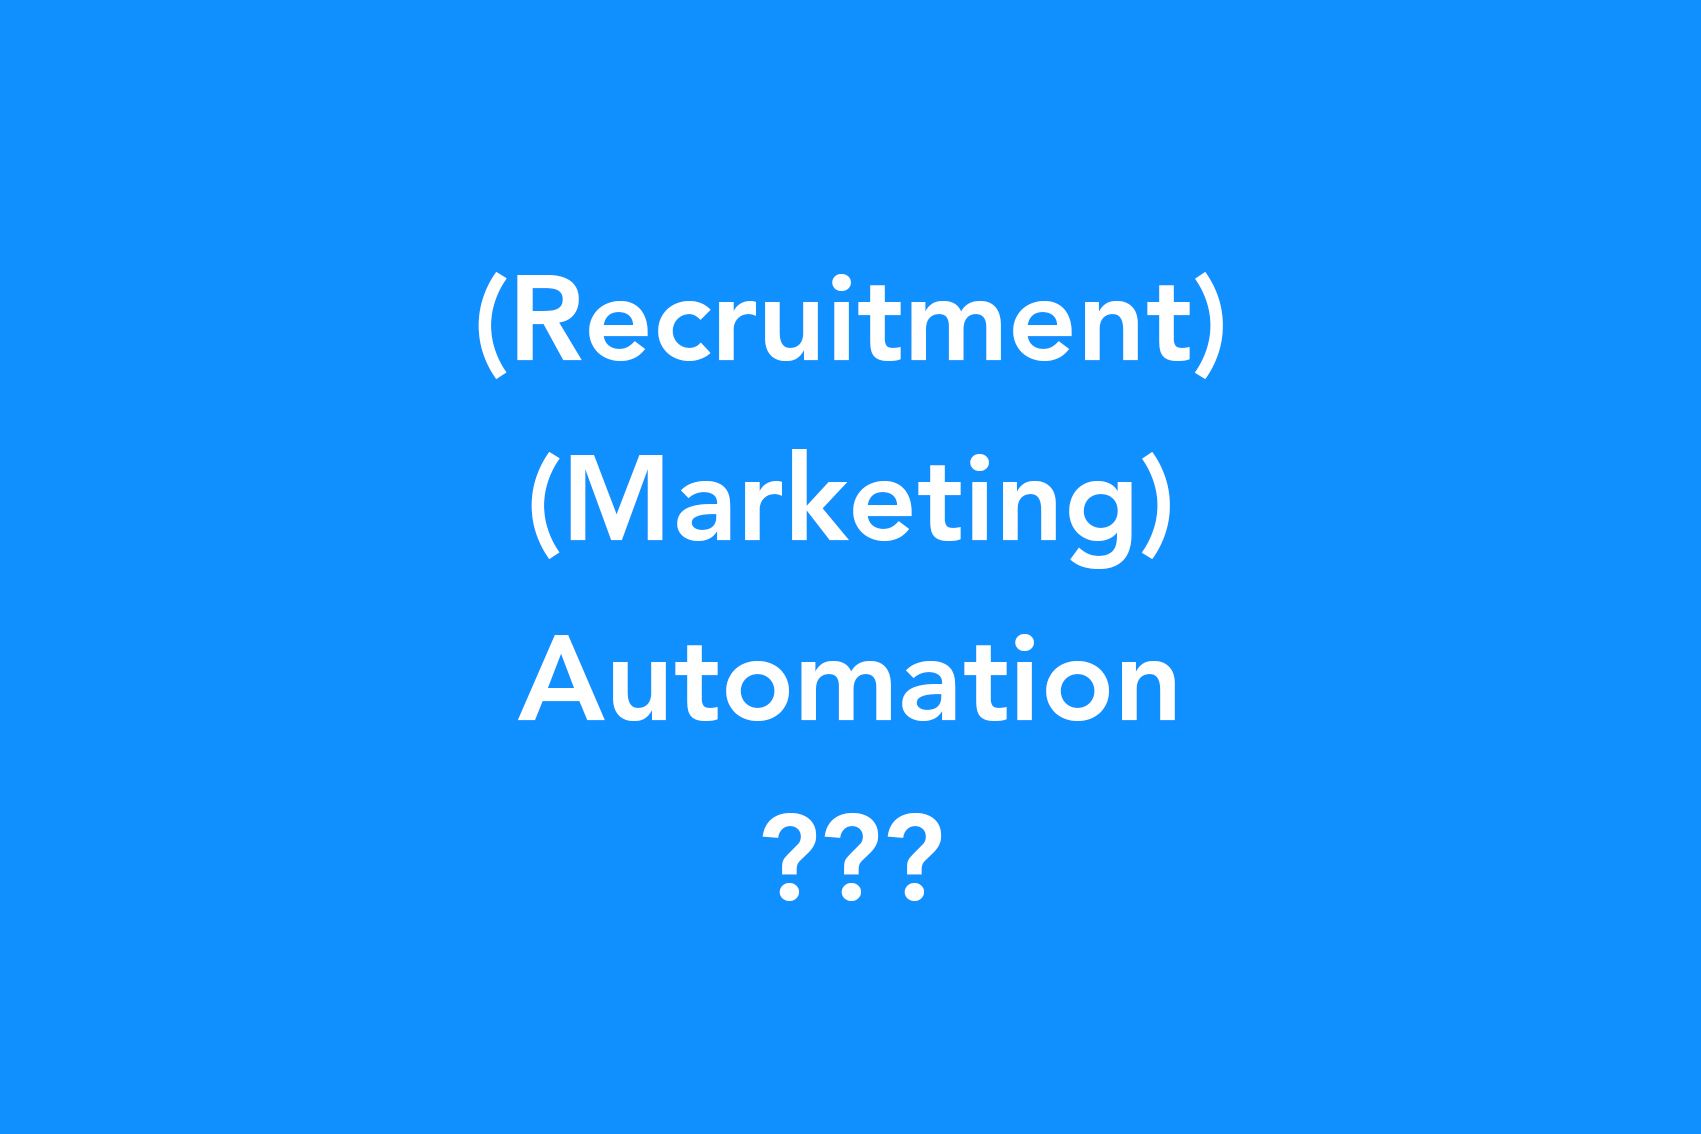 Het probleem en belang van recruitment marketing automation